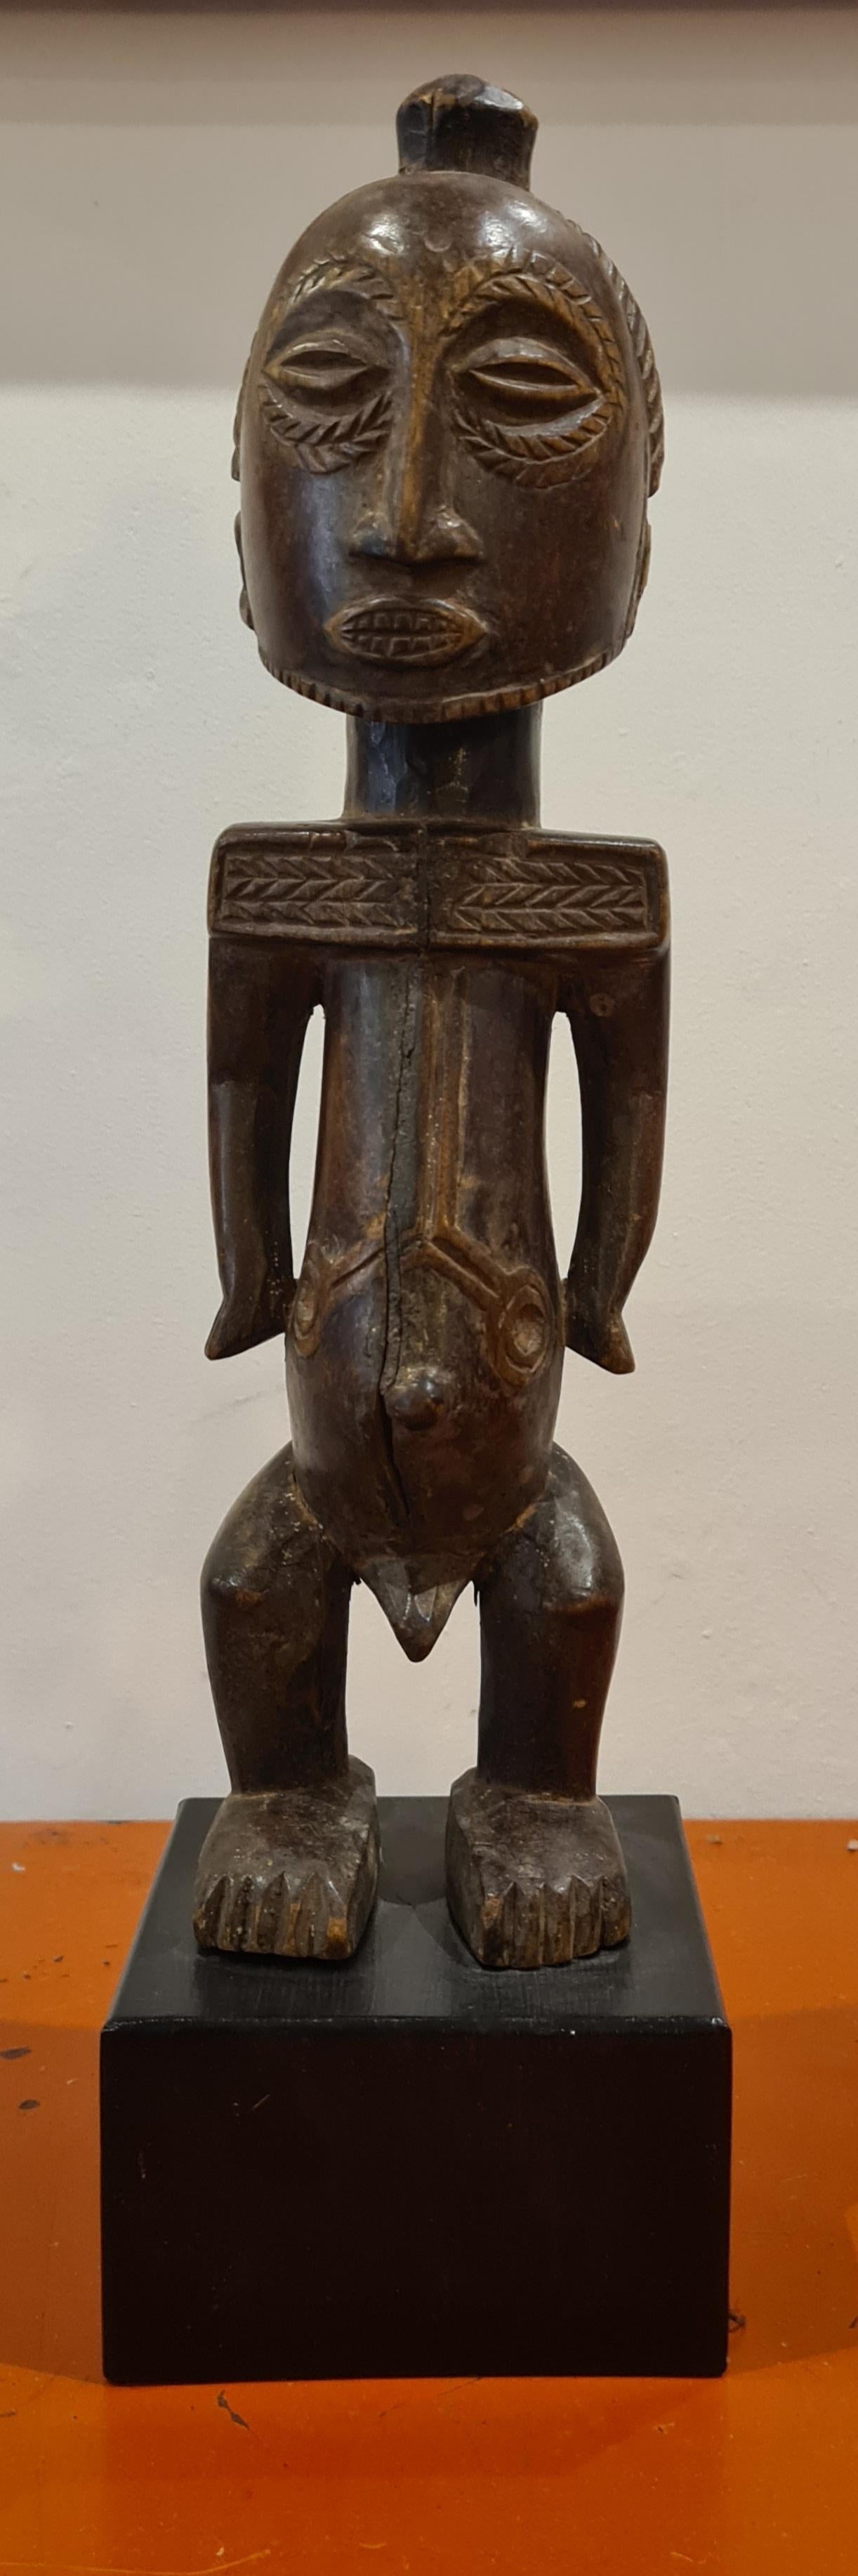 Unknown Figurative Sculpture – Figur des Dignataire, eine männliche Luba-Hemba-Figur, Kongo